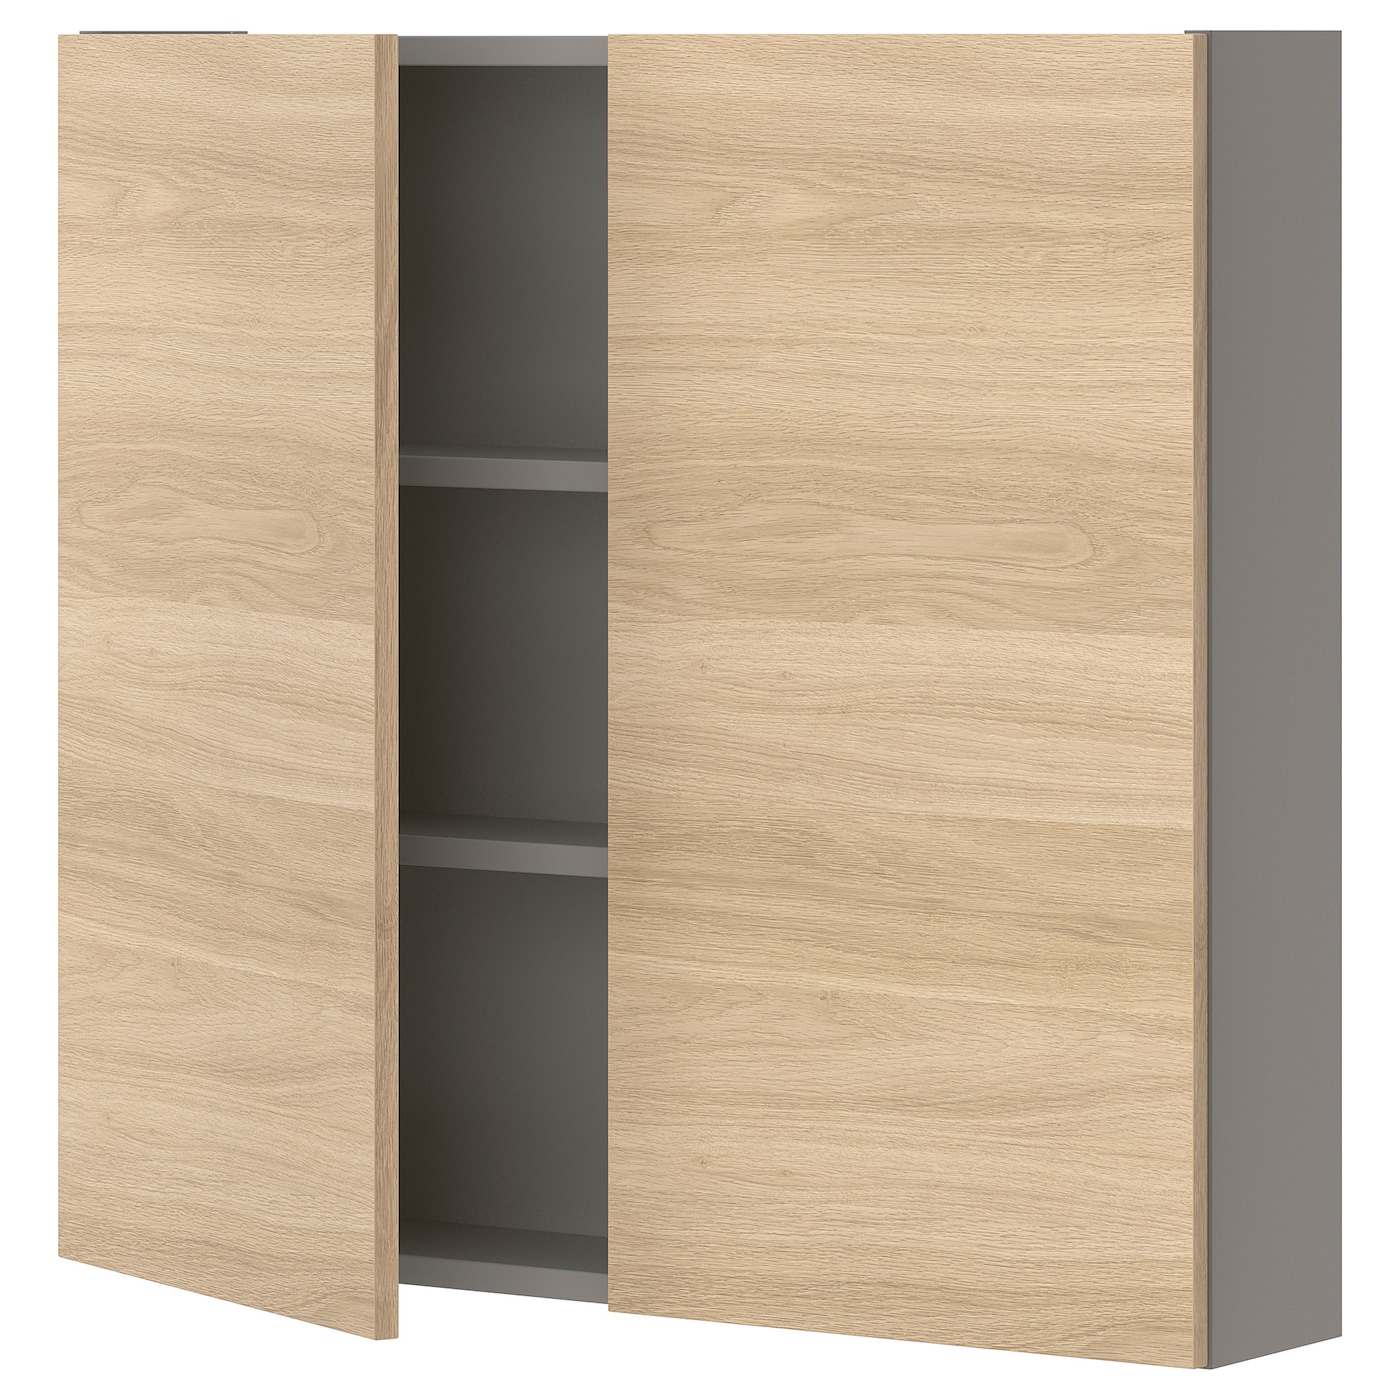 Настенный шкаф для ванной комнаты - ENHET IKEA/ ЭНХЕТ ИКЕА, 80х75х17 см, коричневый